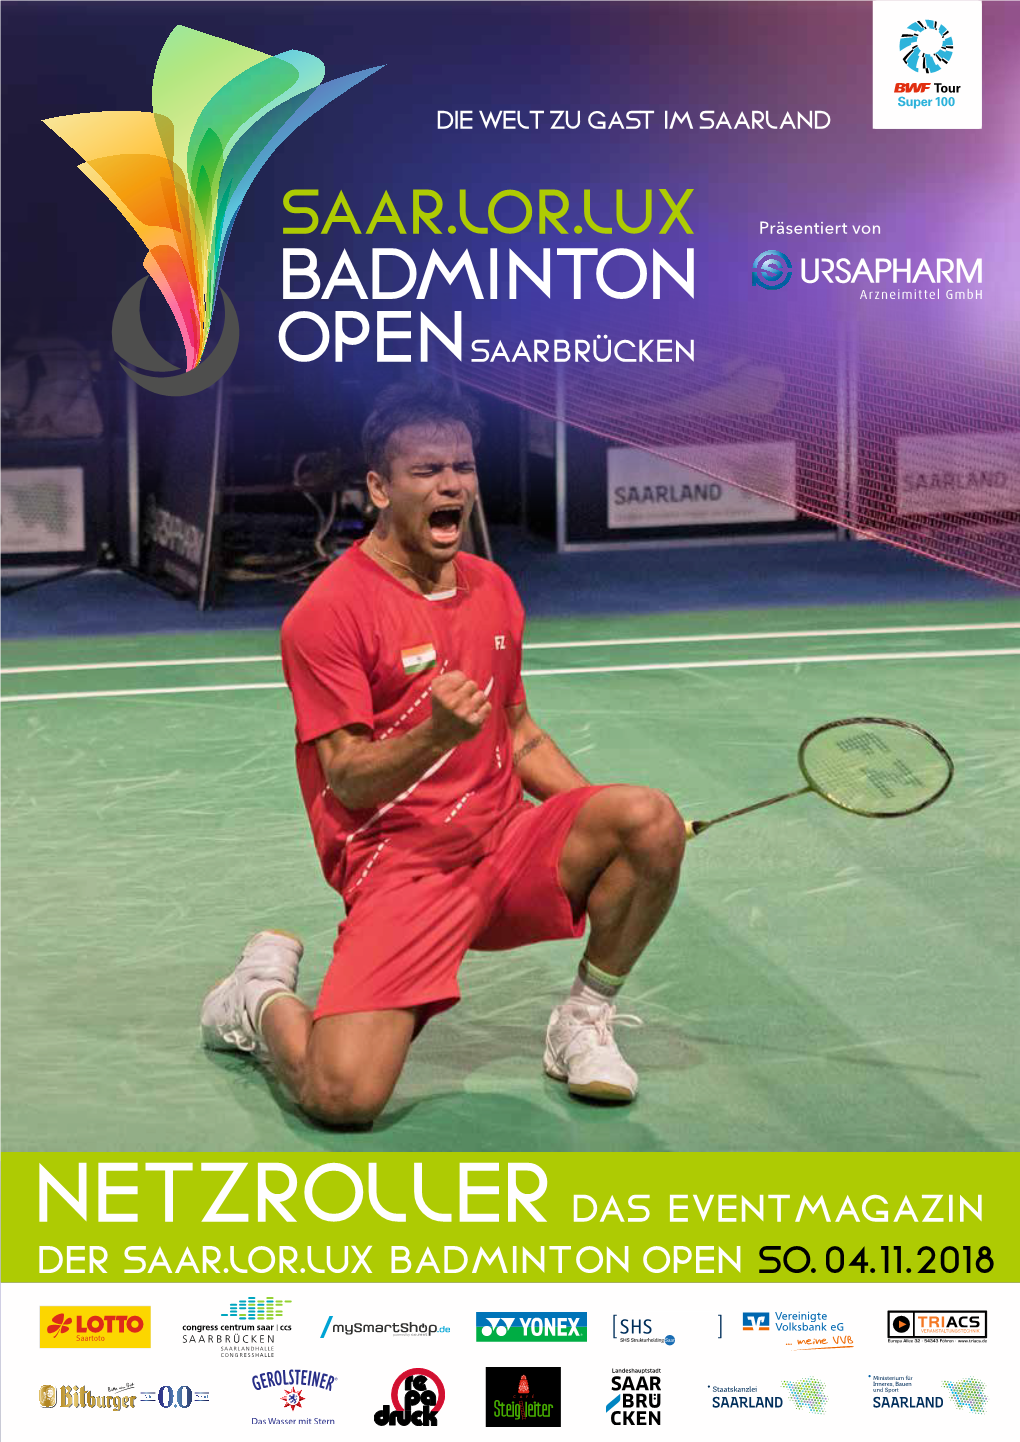 Netzroller Das Eventmagazin Der Saar.Lor.Lux Badminton Open So